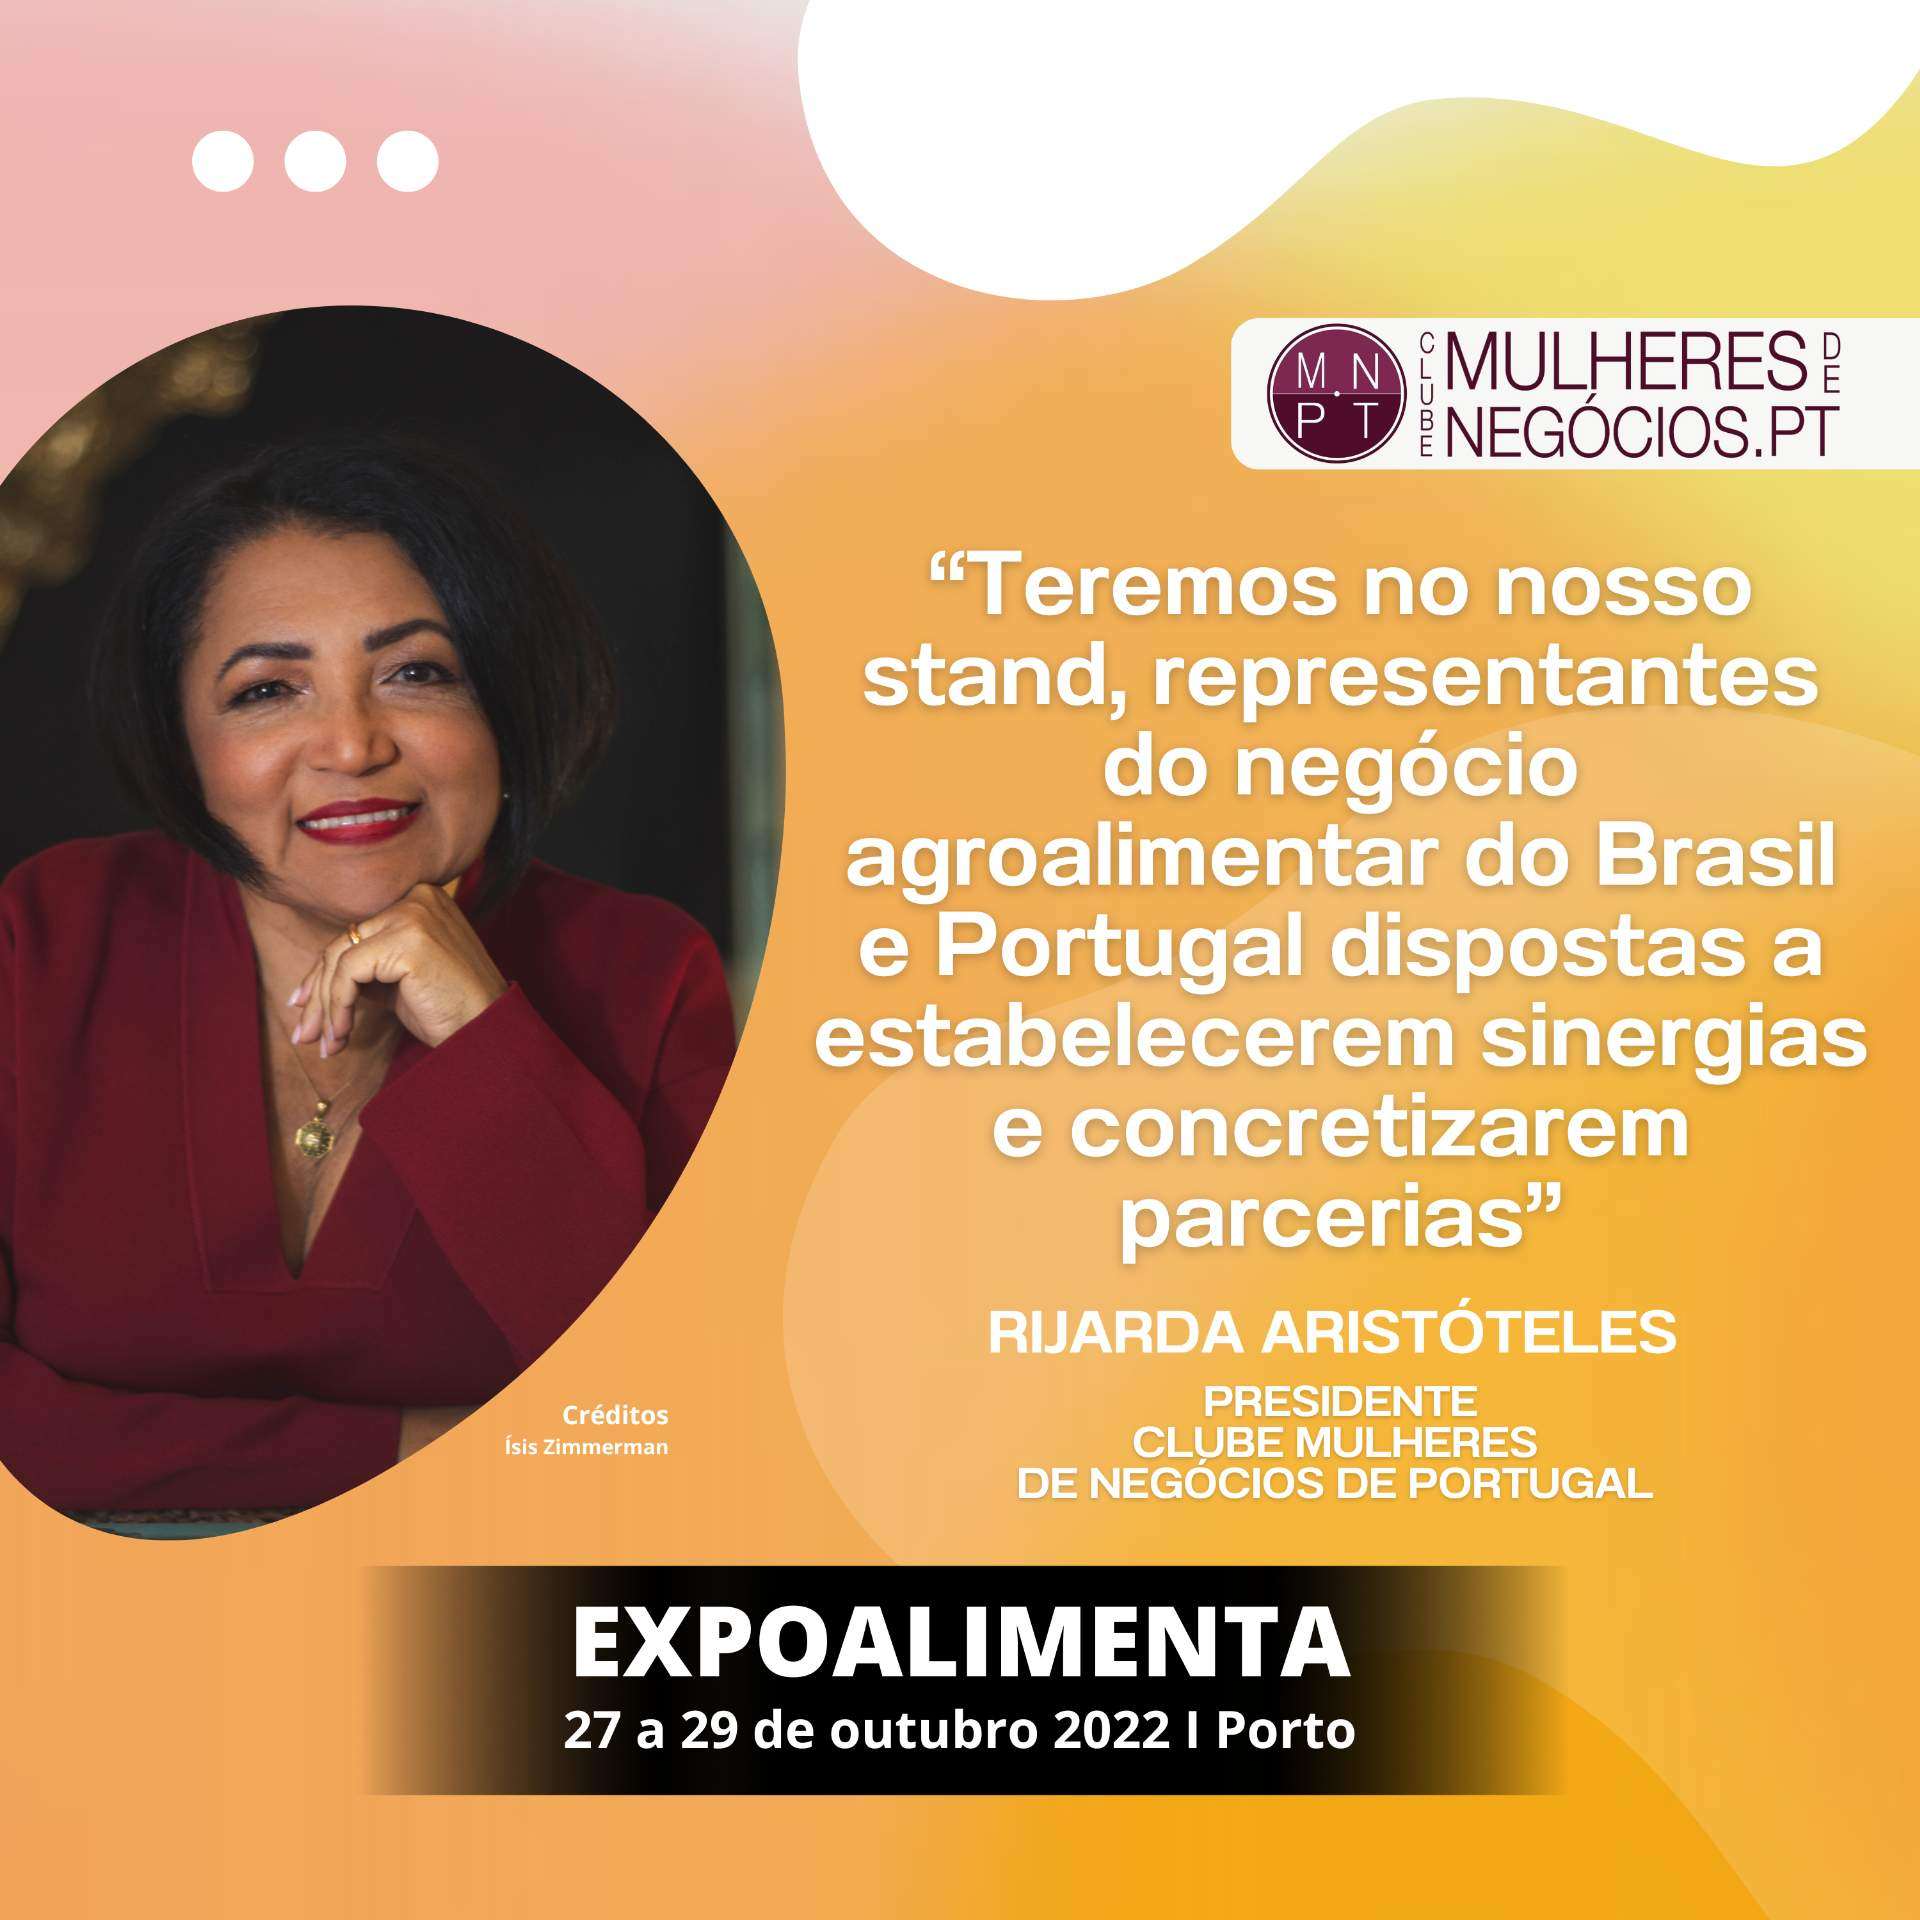 Clube Mulheres de Negócios de Portugal : "Nous aurons à notre stand des représentants du secteur agroalimentaire du Brésil et du Portugal désireux d'établir des synergies et de conclure des partenariats".